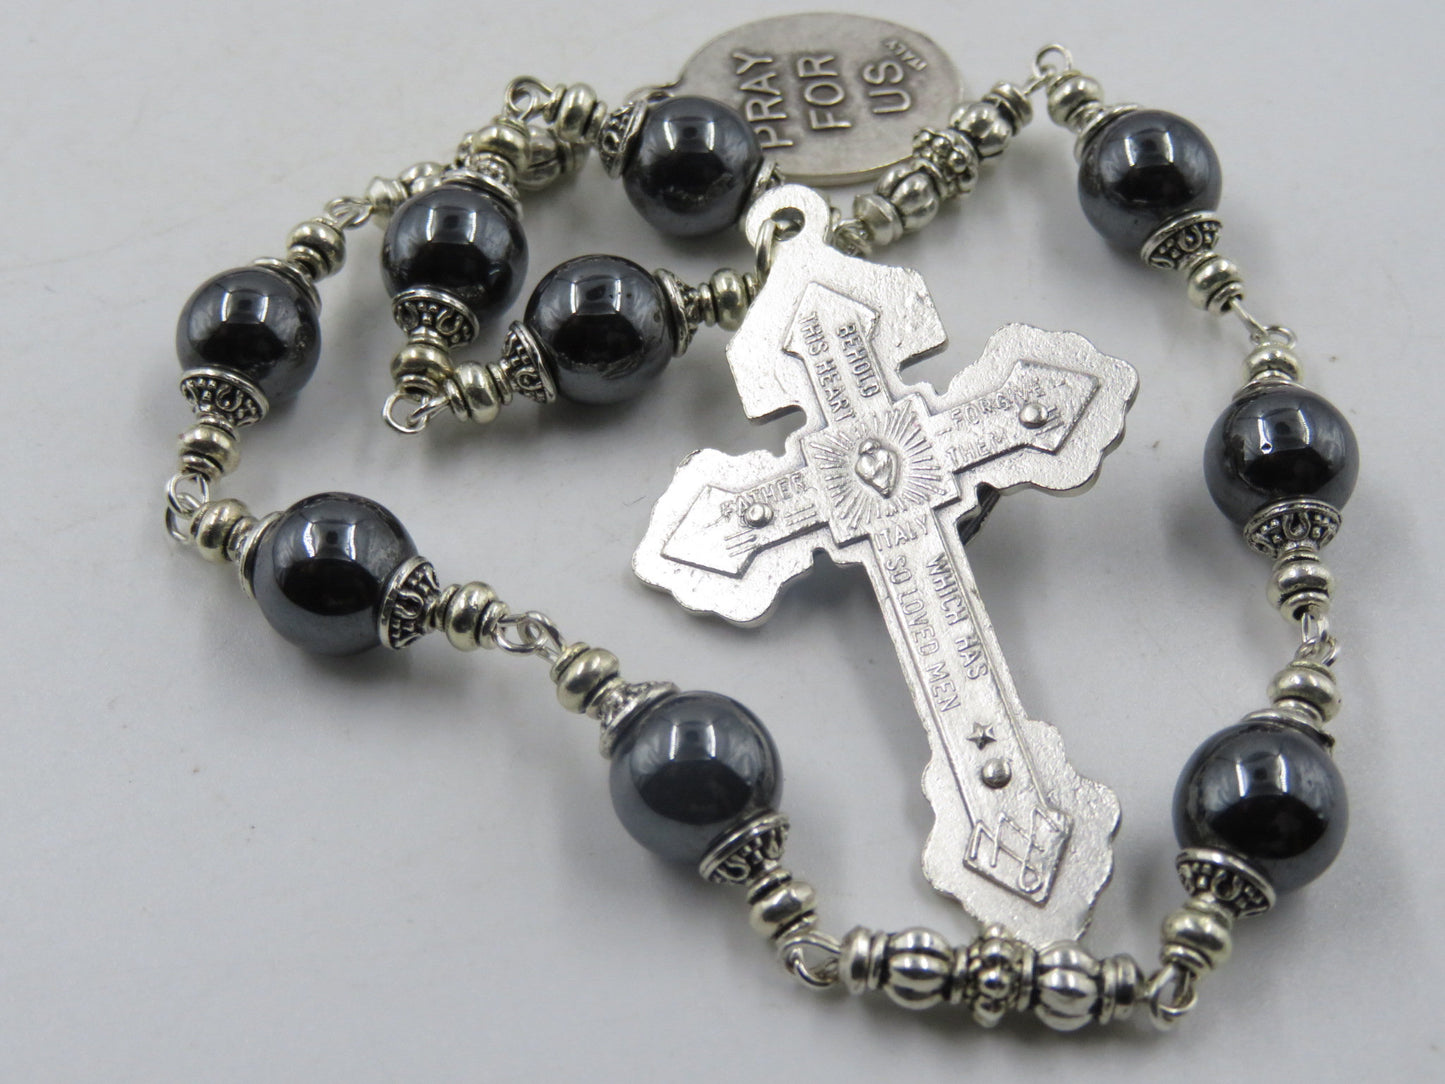 Handmade Saint Bernard prayer Chaplet, Confirmation gift, Pardon Crucifix prayer beads, Hematite prayer bead chaplet Spiritual prayer beads.